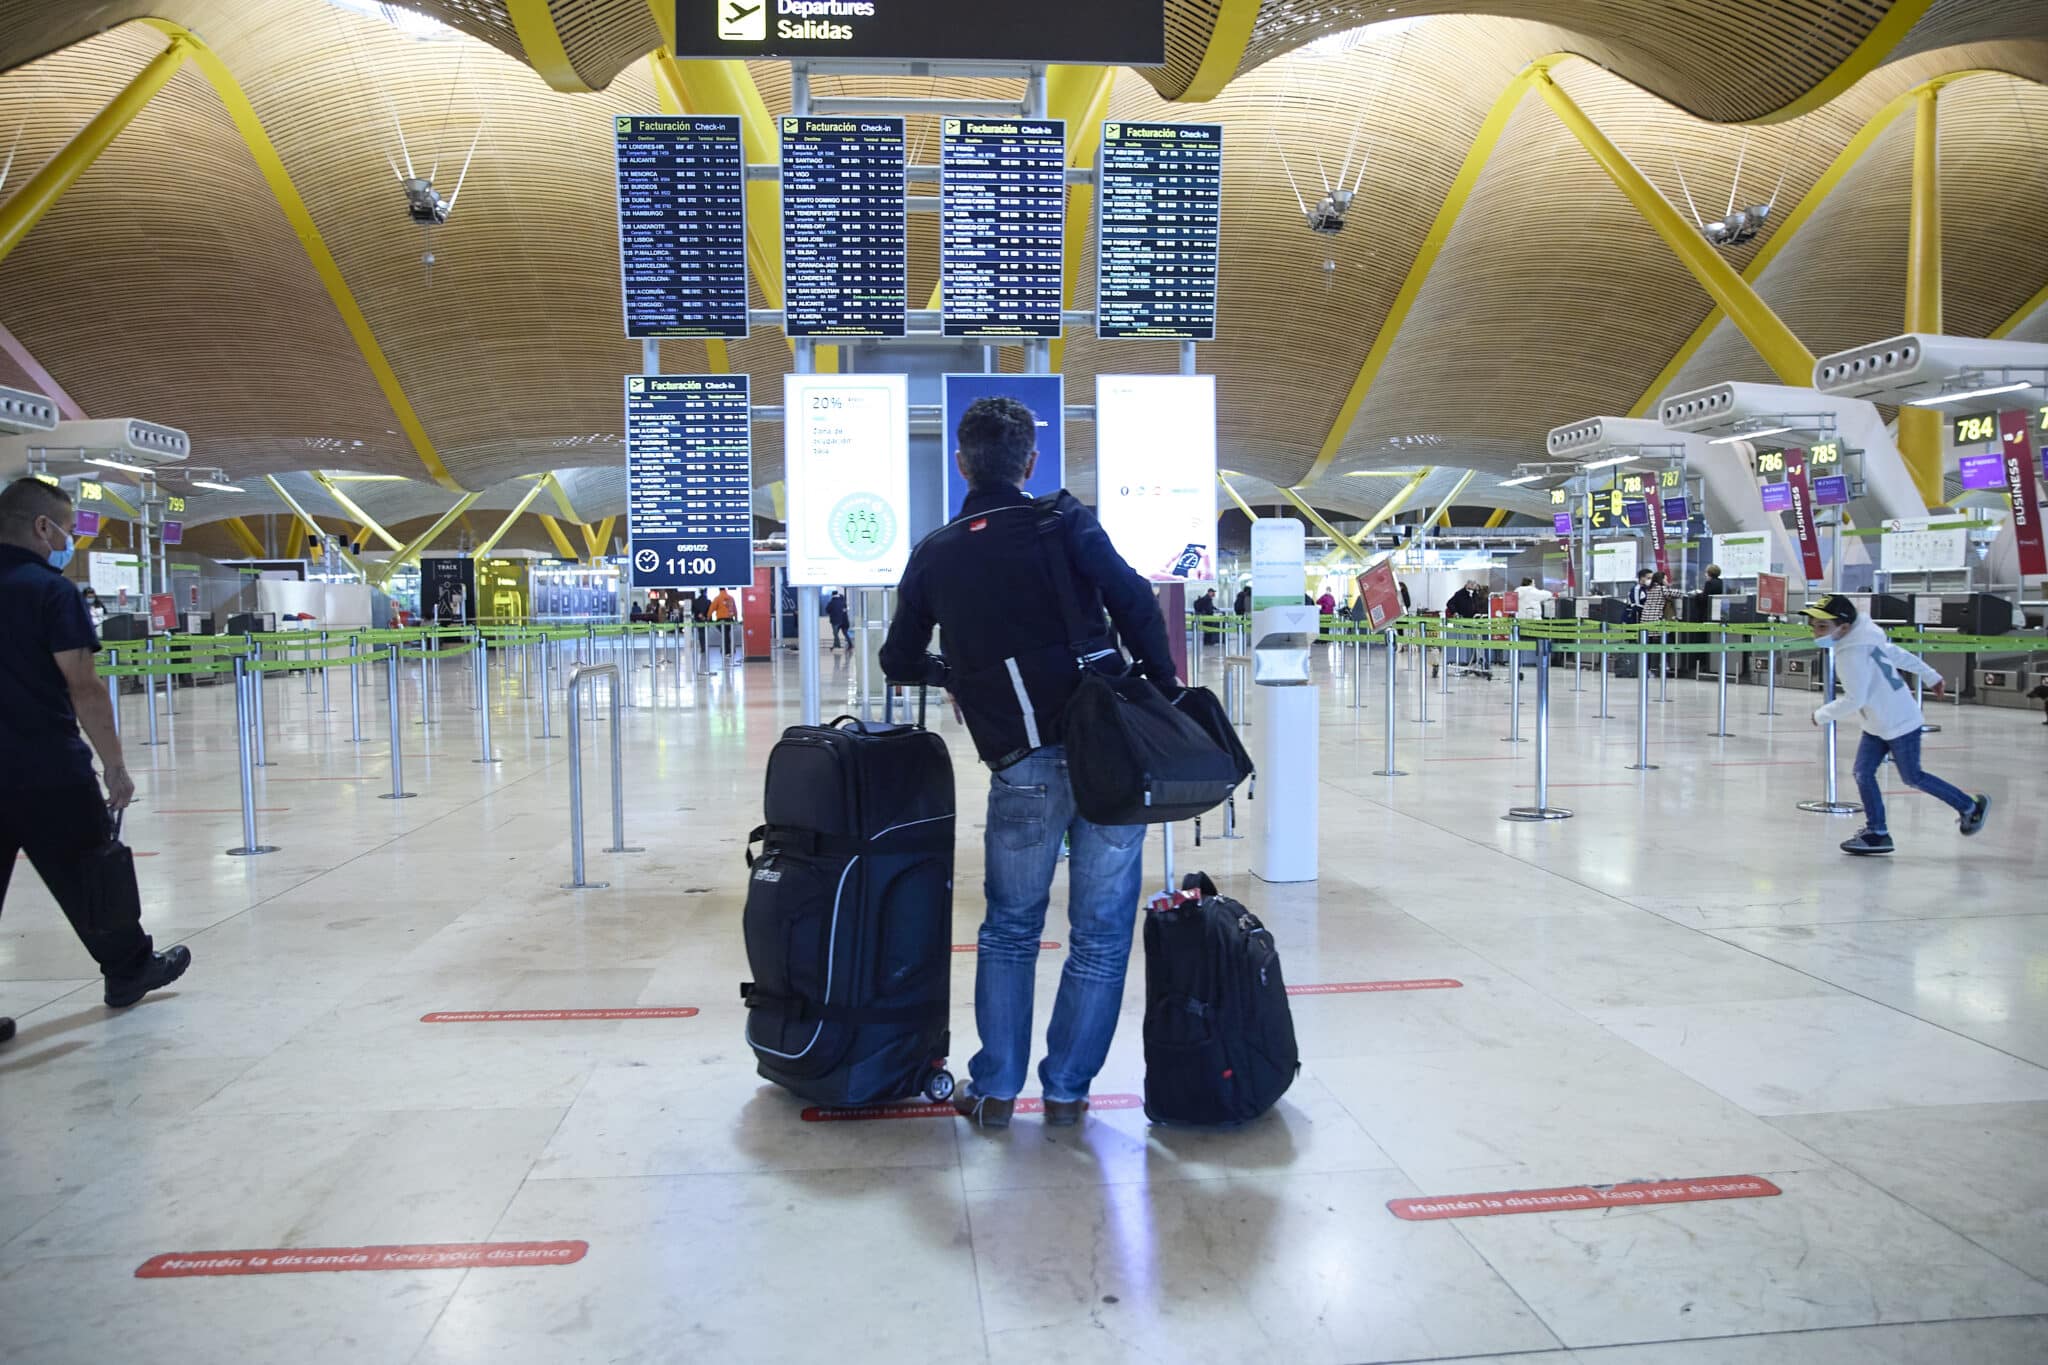 Una persona con maletas en el aeropuerto Adolfo Suárez, Madrid-Barajas